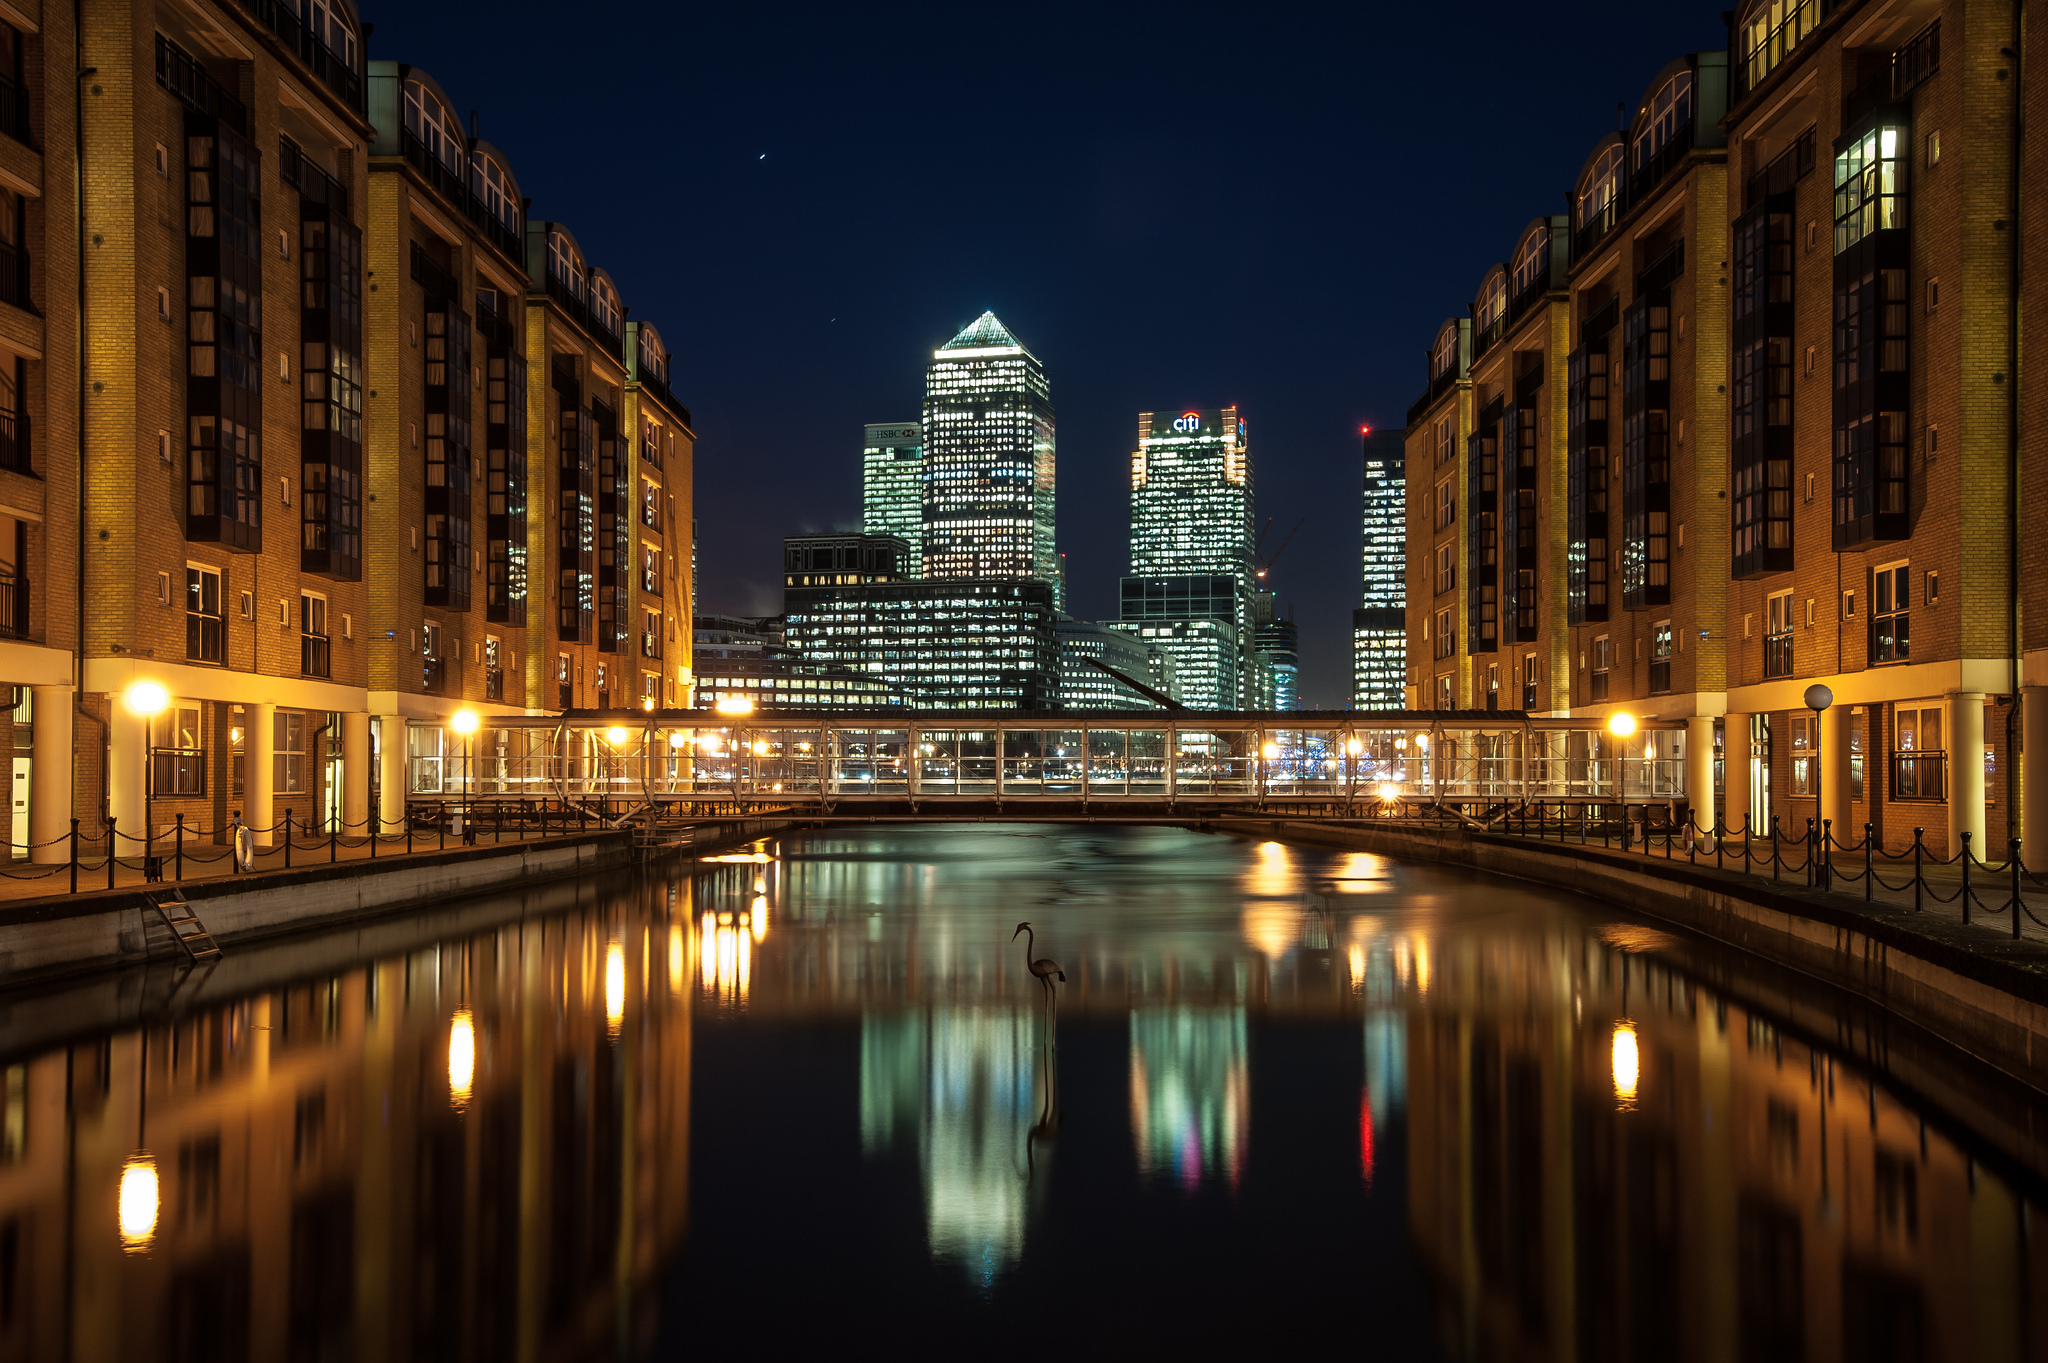 attractive lighting london city wallpapers desktiop download